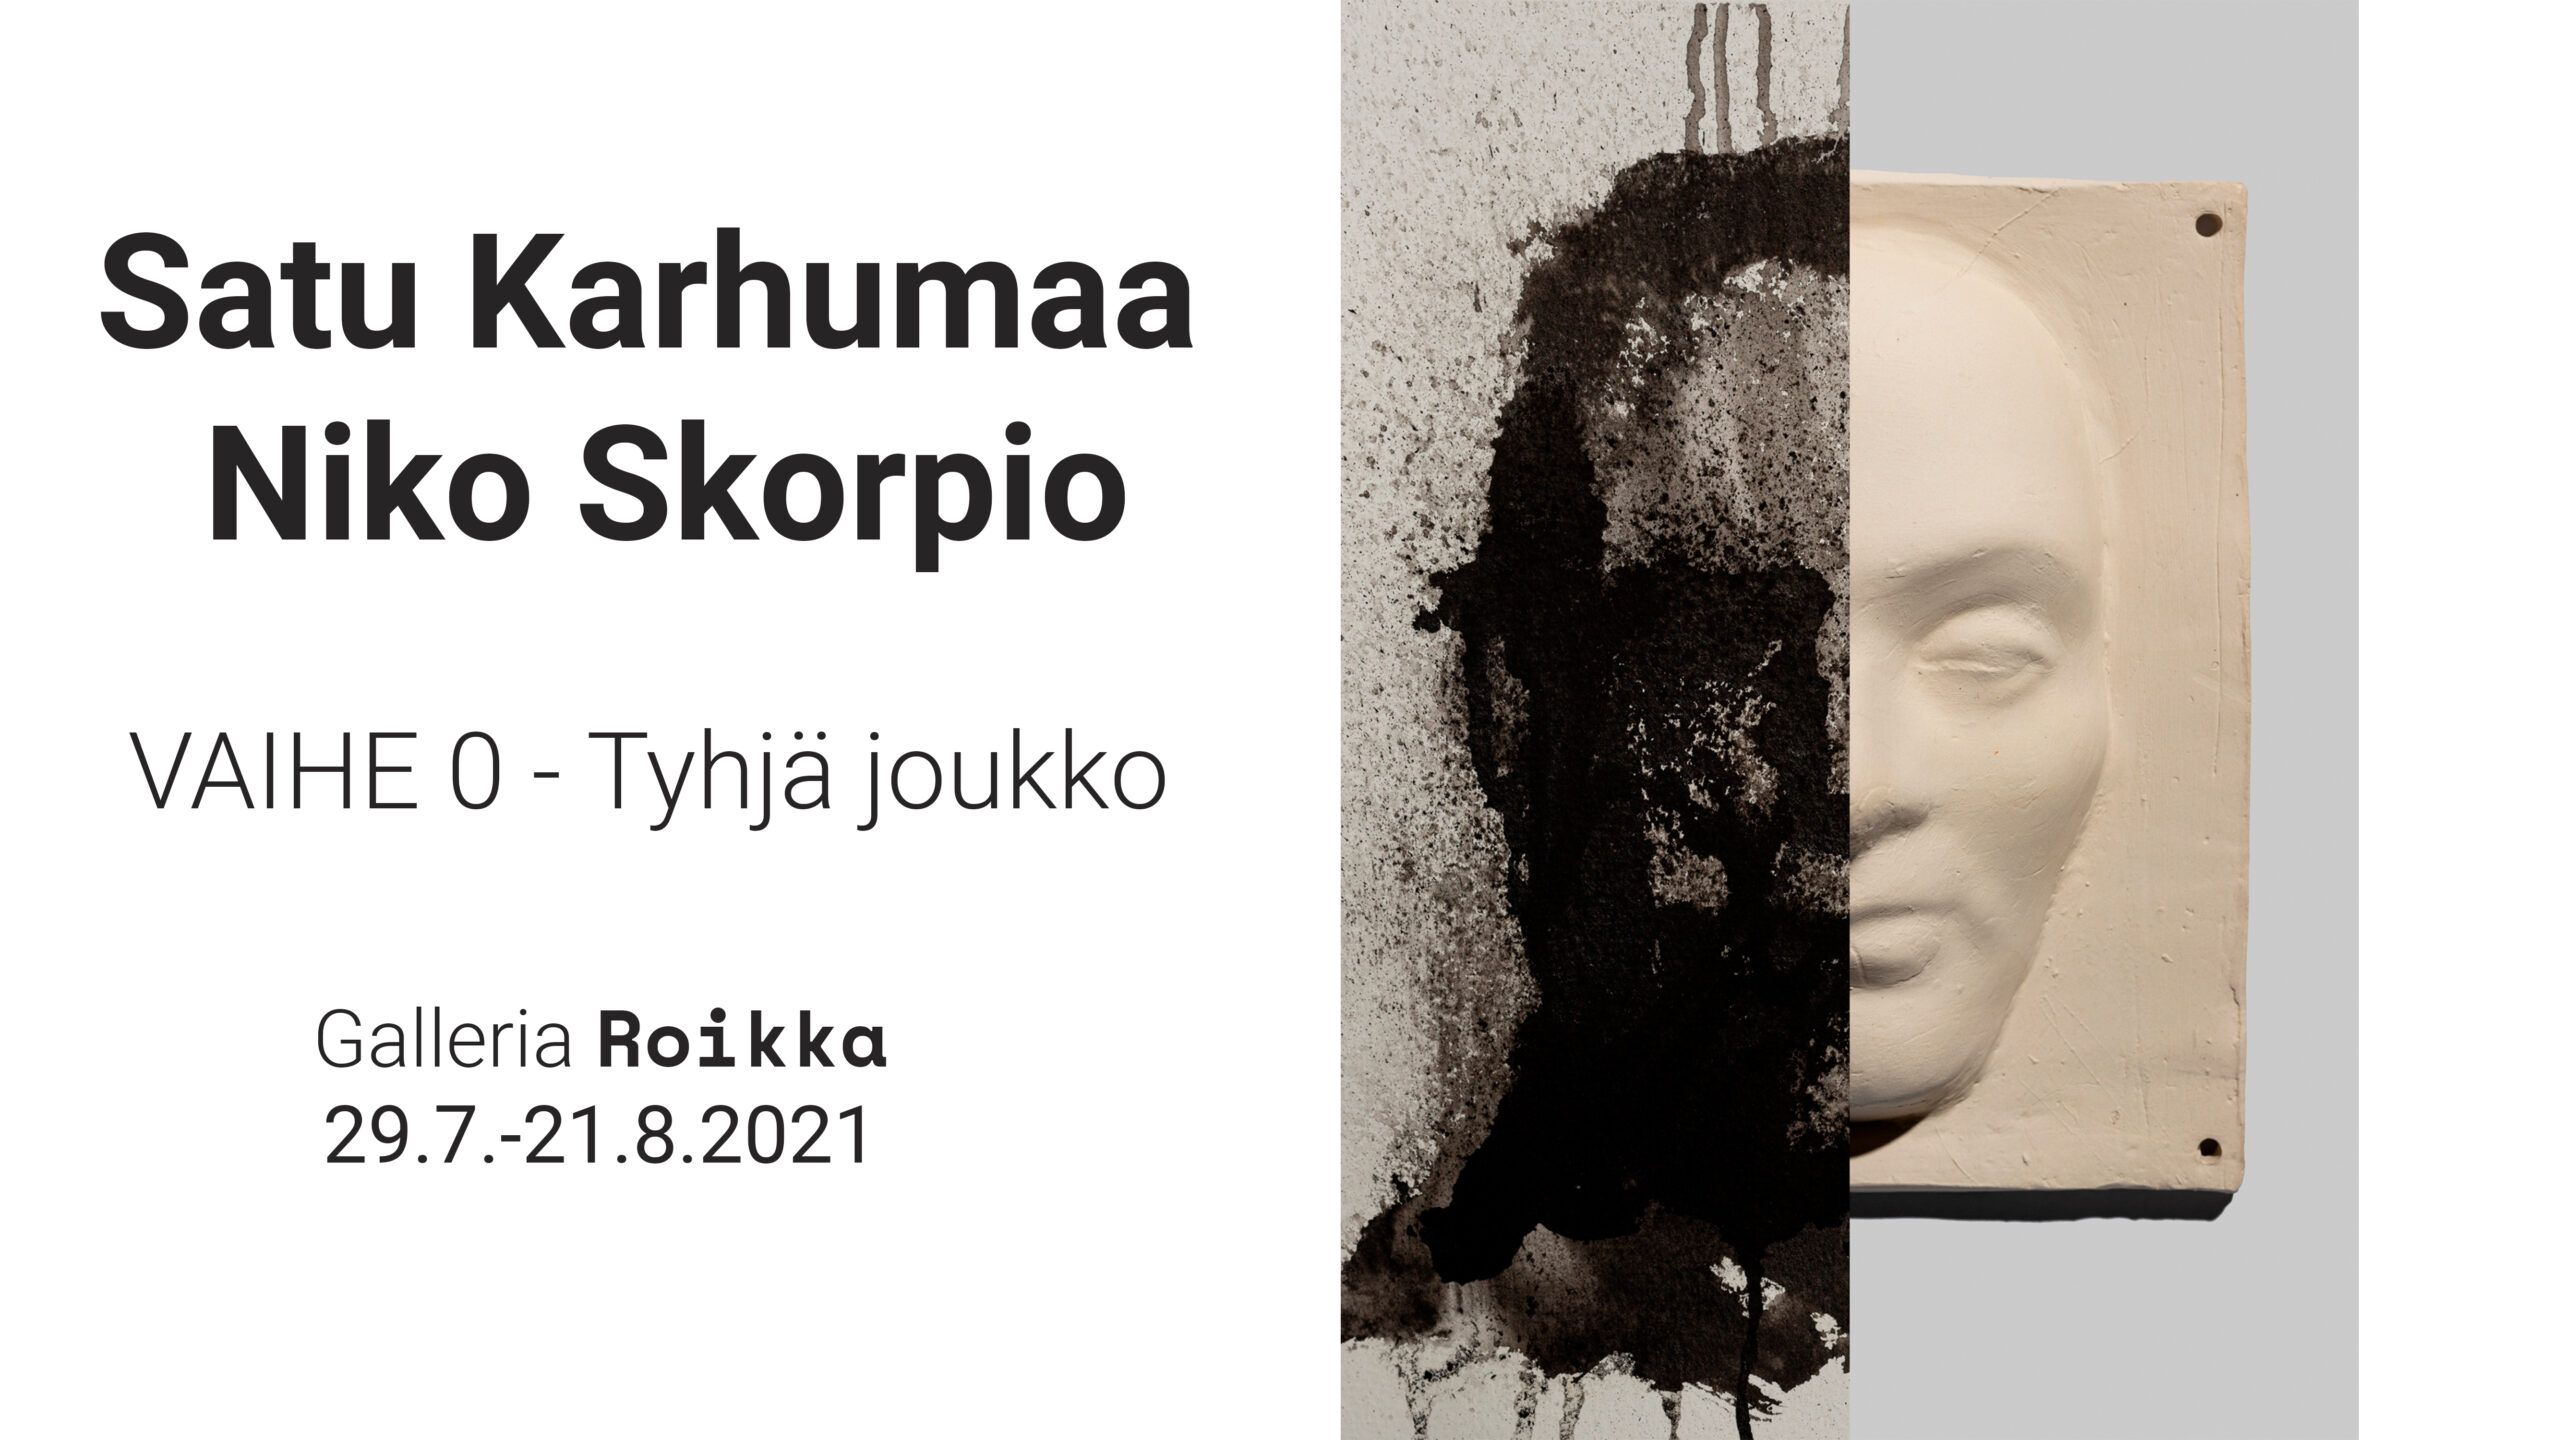 ROIKKA – Satu Karhumaa & Niko Skorpio — VAIHE 0 – Tyhjä joukko 29.7. -21.8.2021